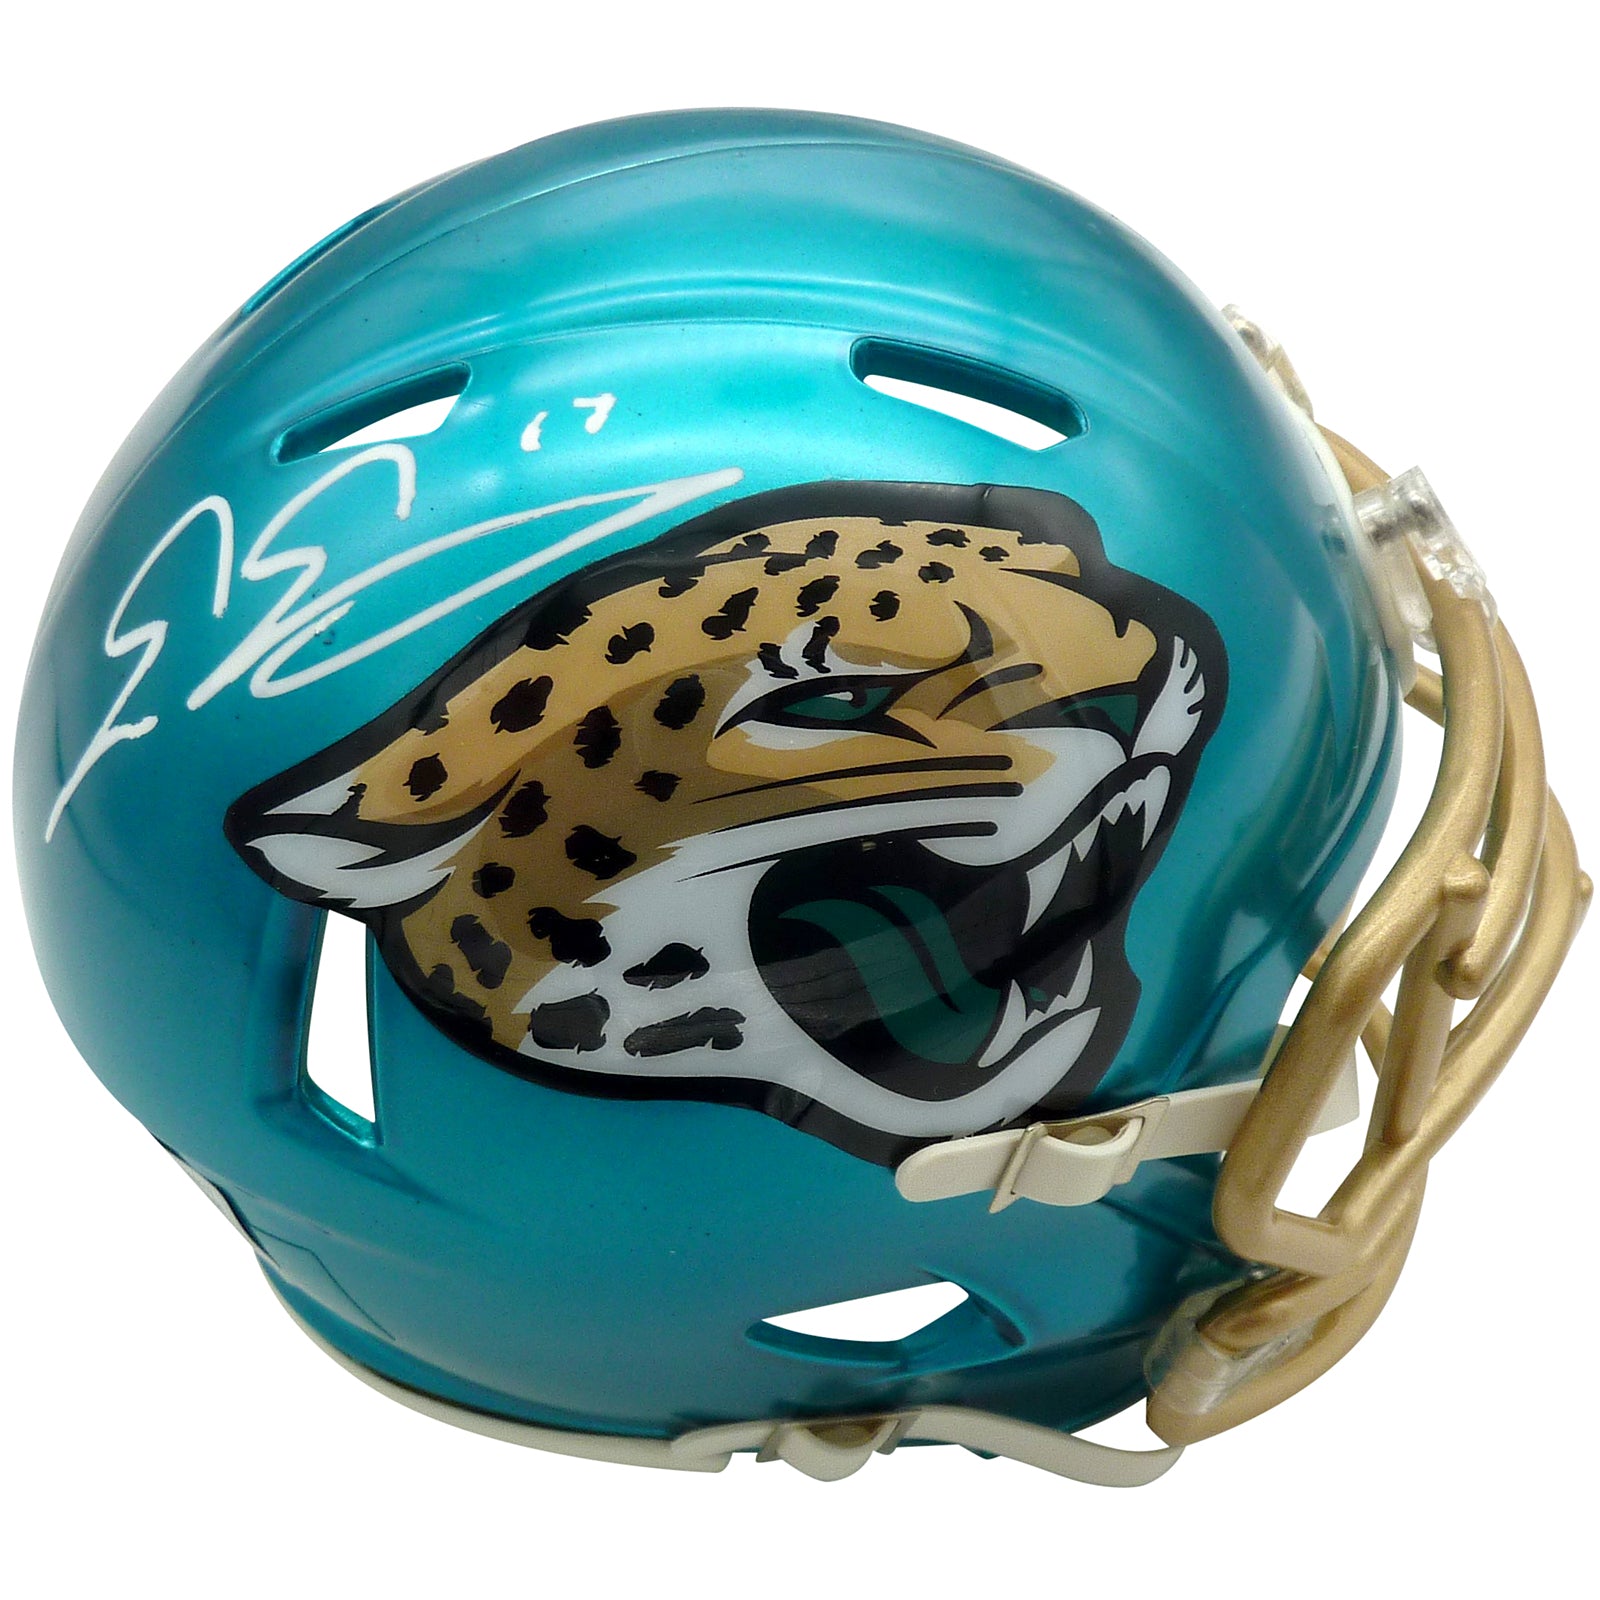 Evan Engram Autographed Jacksonville Jaguars (Flash Alternate) Mini Helmet - Beckett